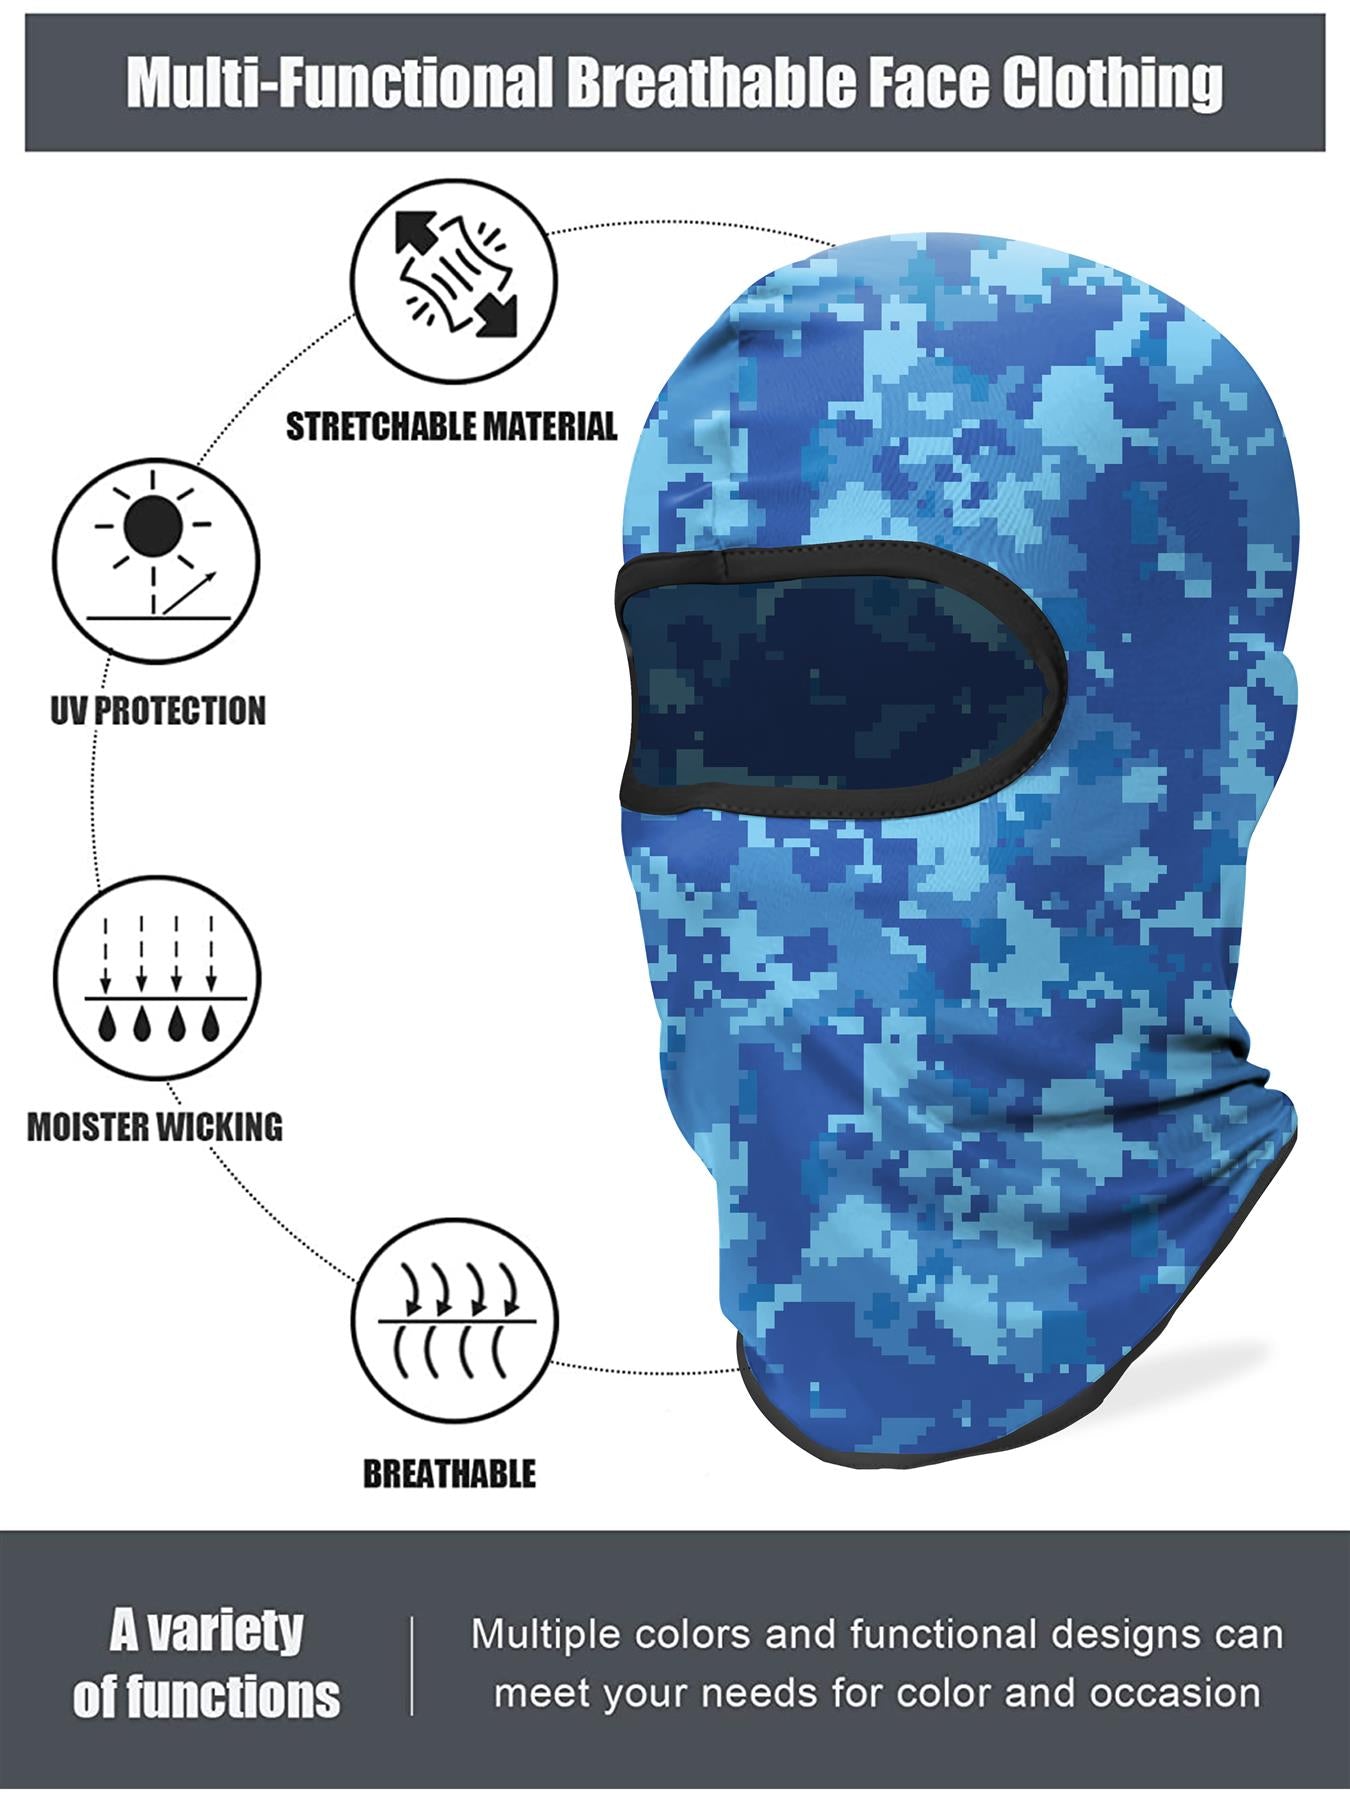 Plain Camouflage Unisex Ski Face Mask